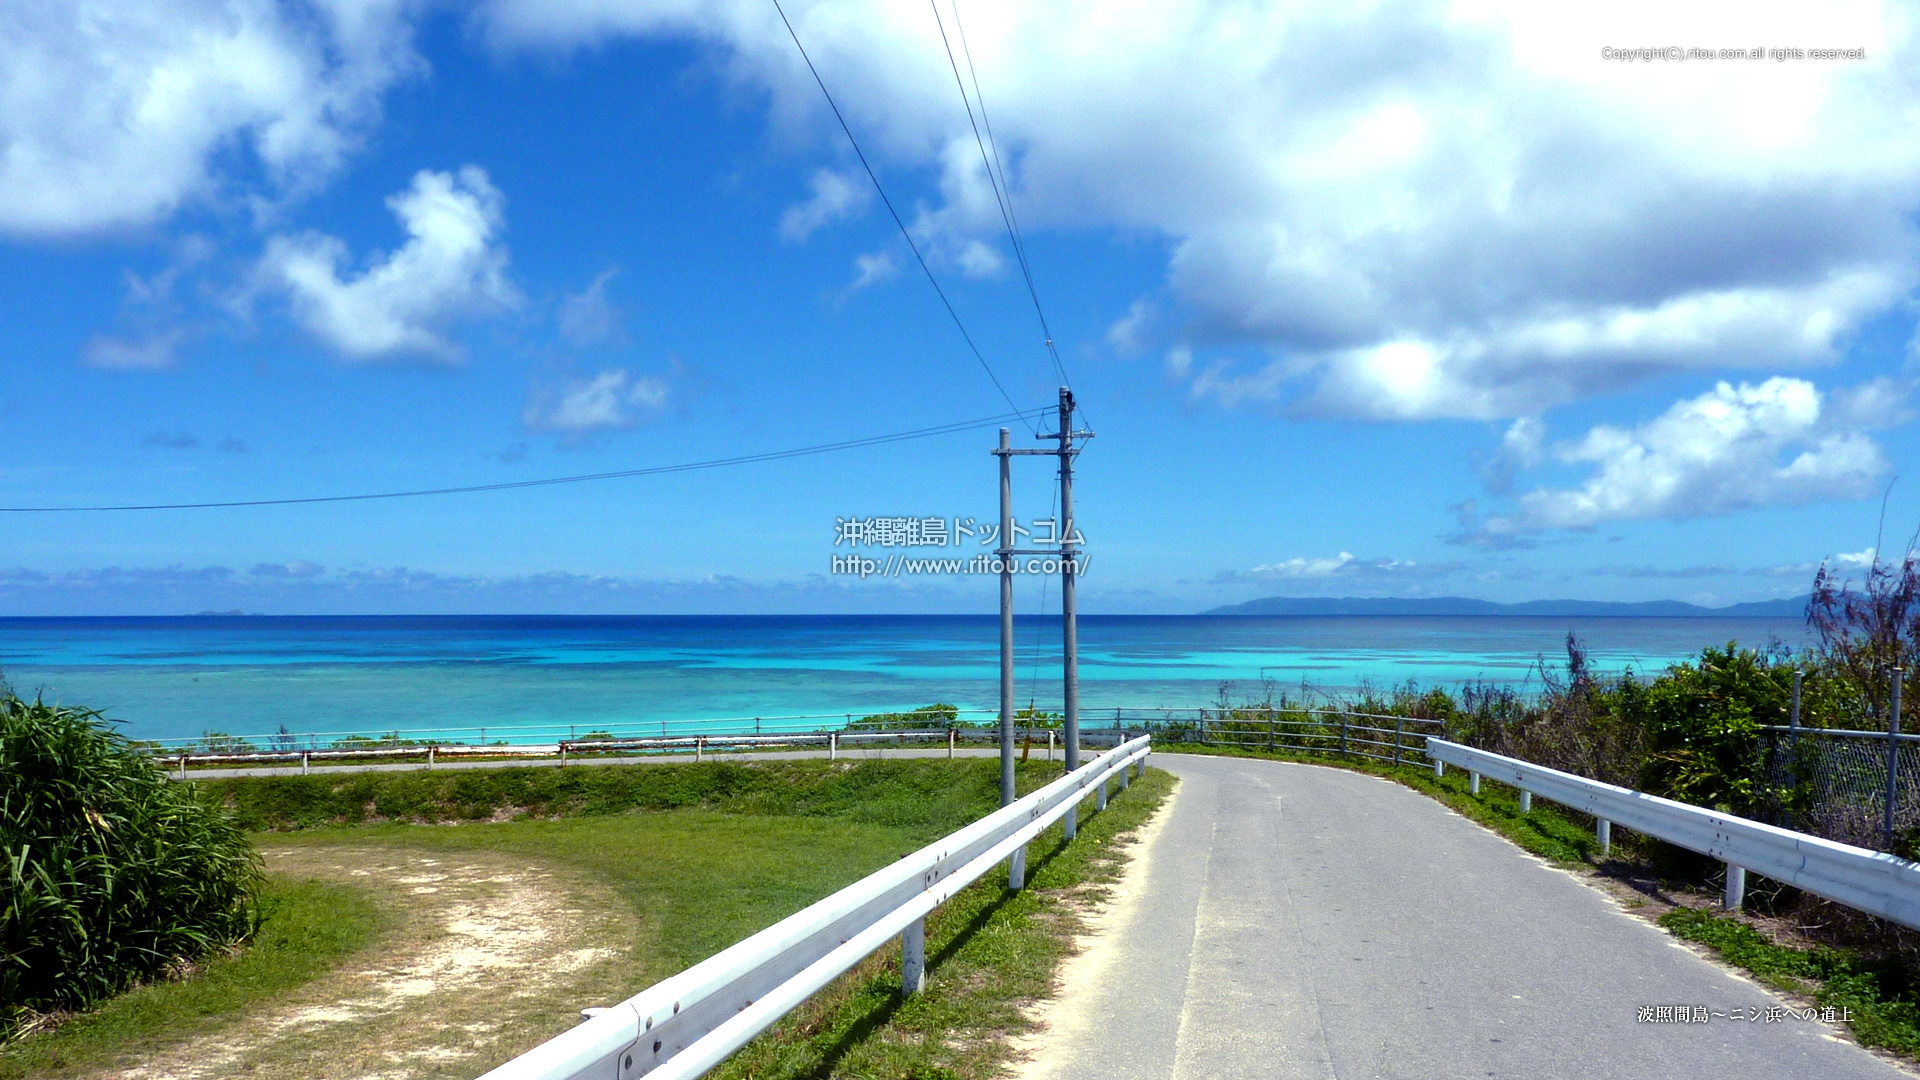 波照間島～ニシ浜への道上 - 沖縄離島の壁紙